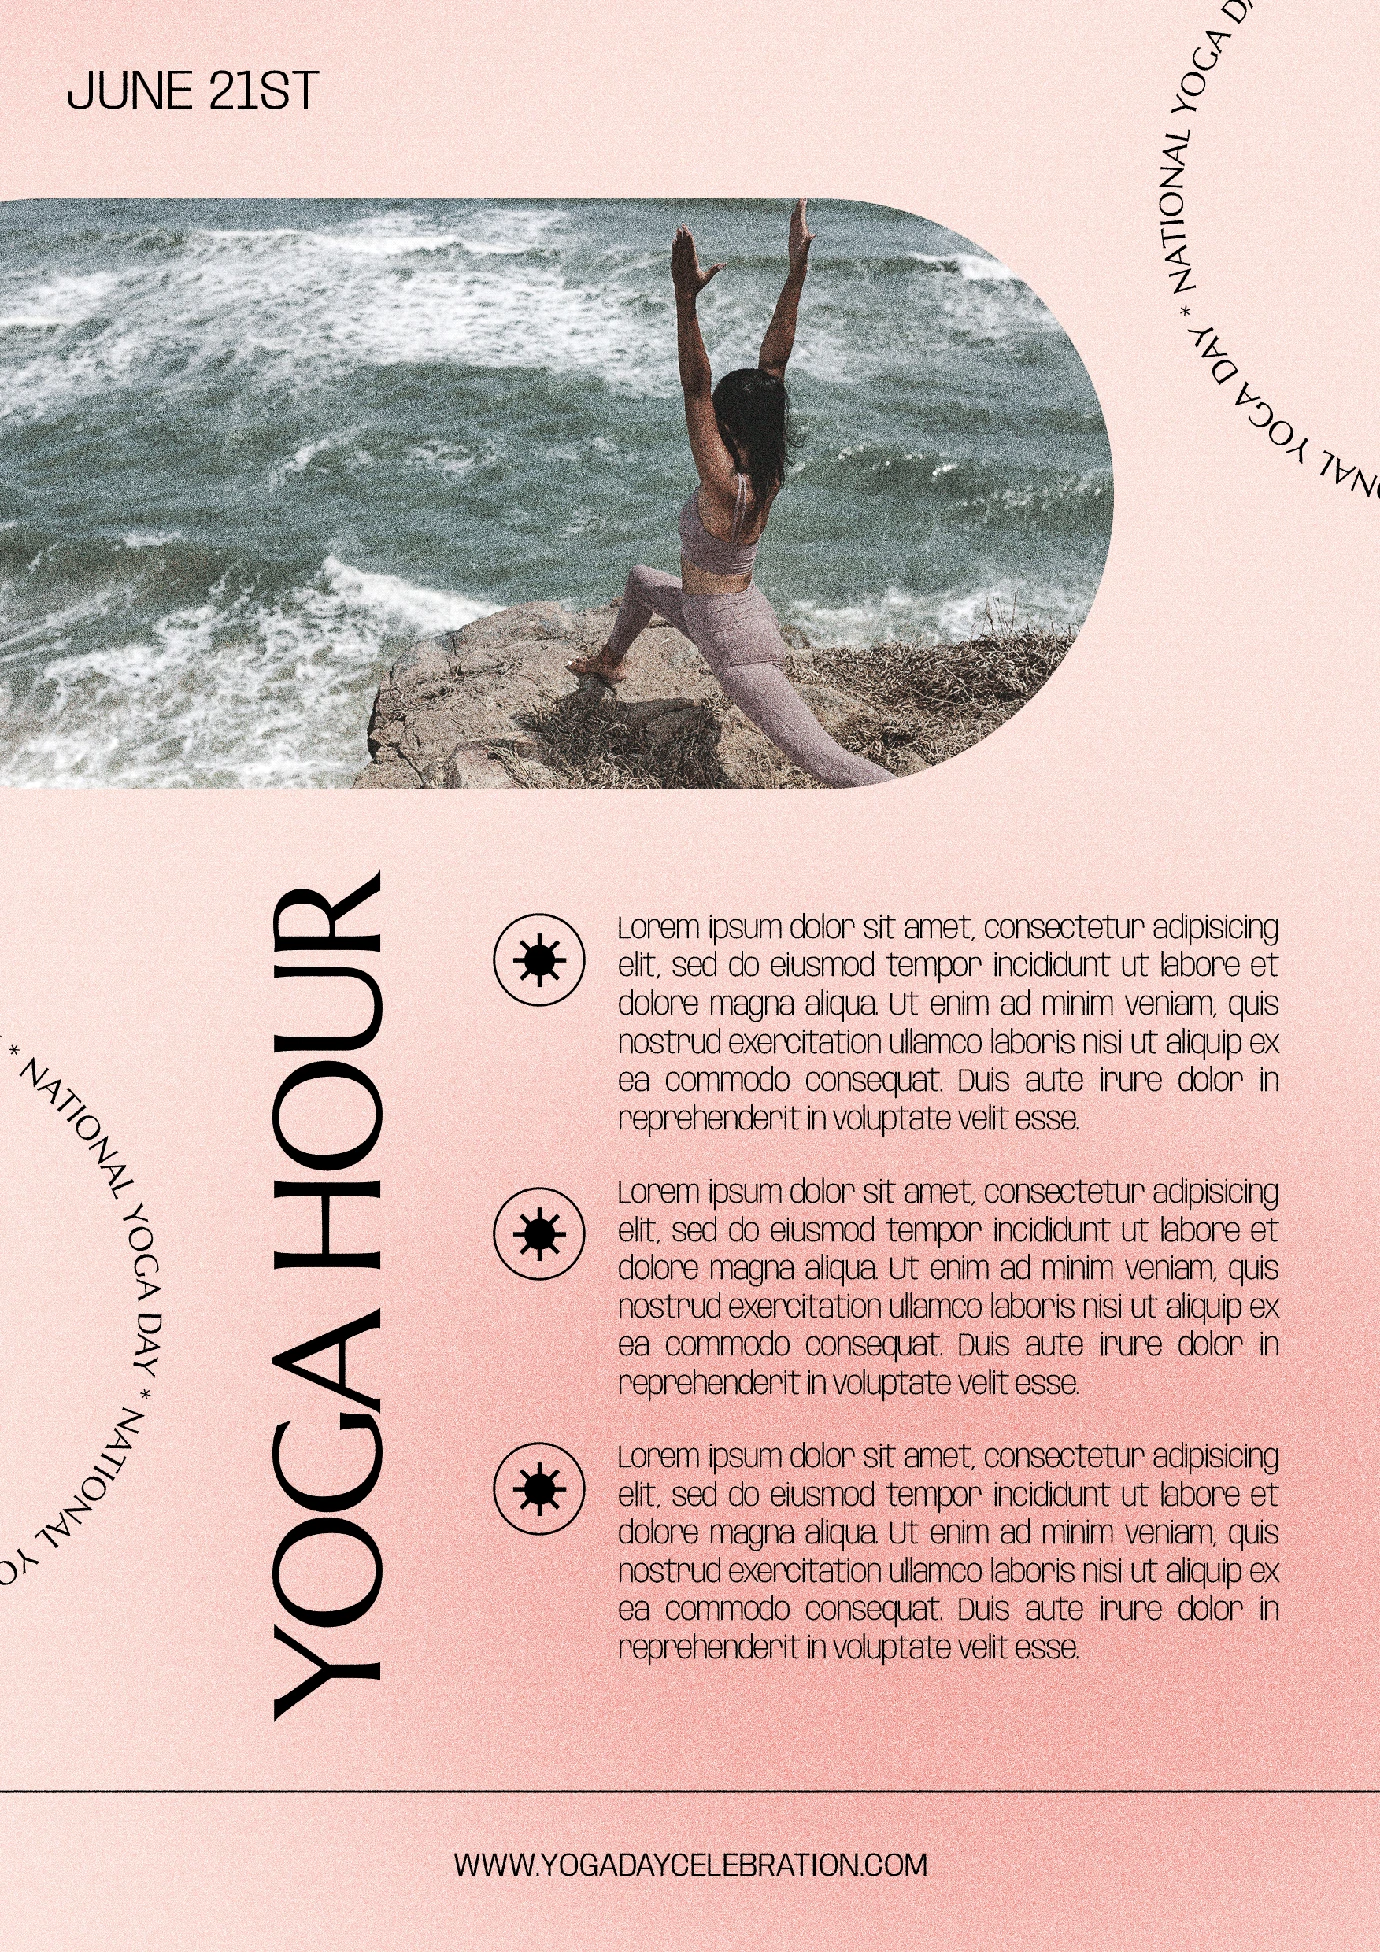 潮流酸性炫彩女性瑜伽运动健身海报主图详情模板PSD分层设计素材【021】